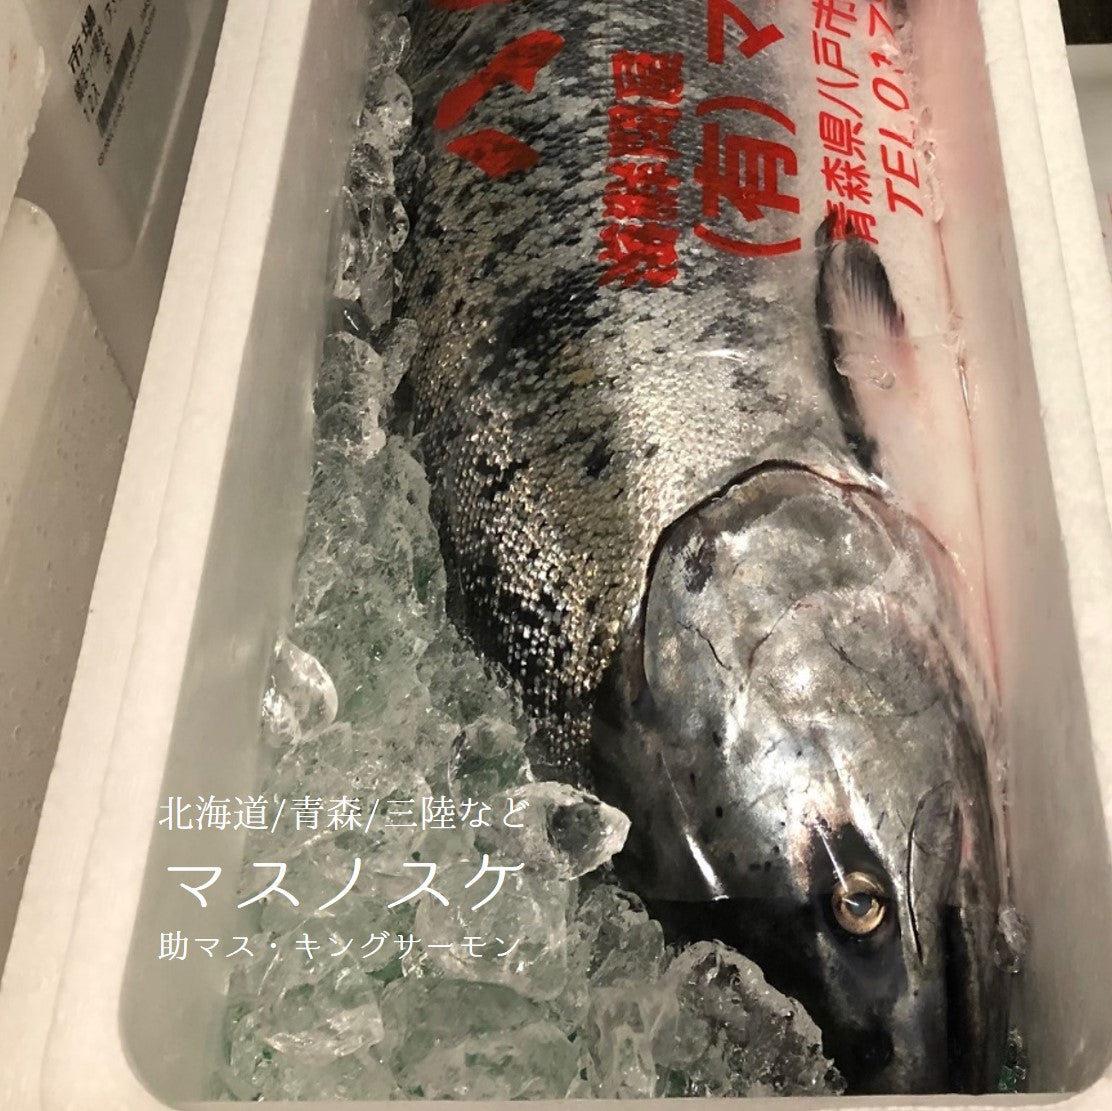 鮭 サーモン キングサーモン 天然 刺身用 天然キングサーモン 約600g